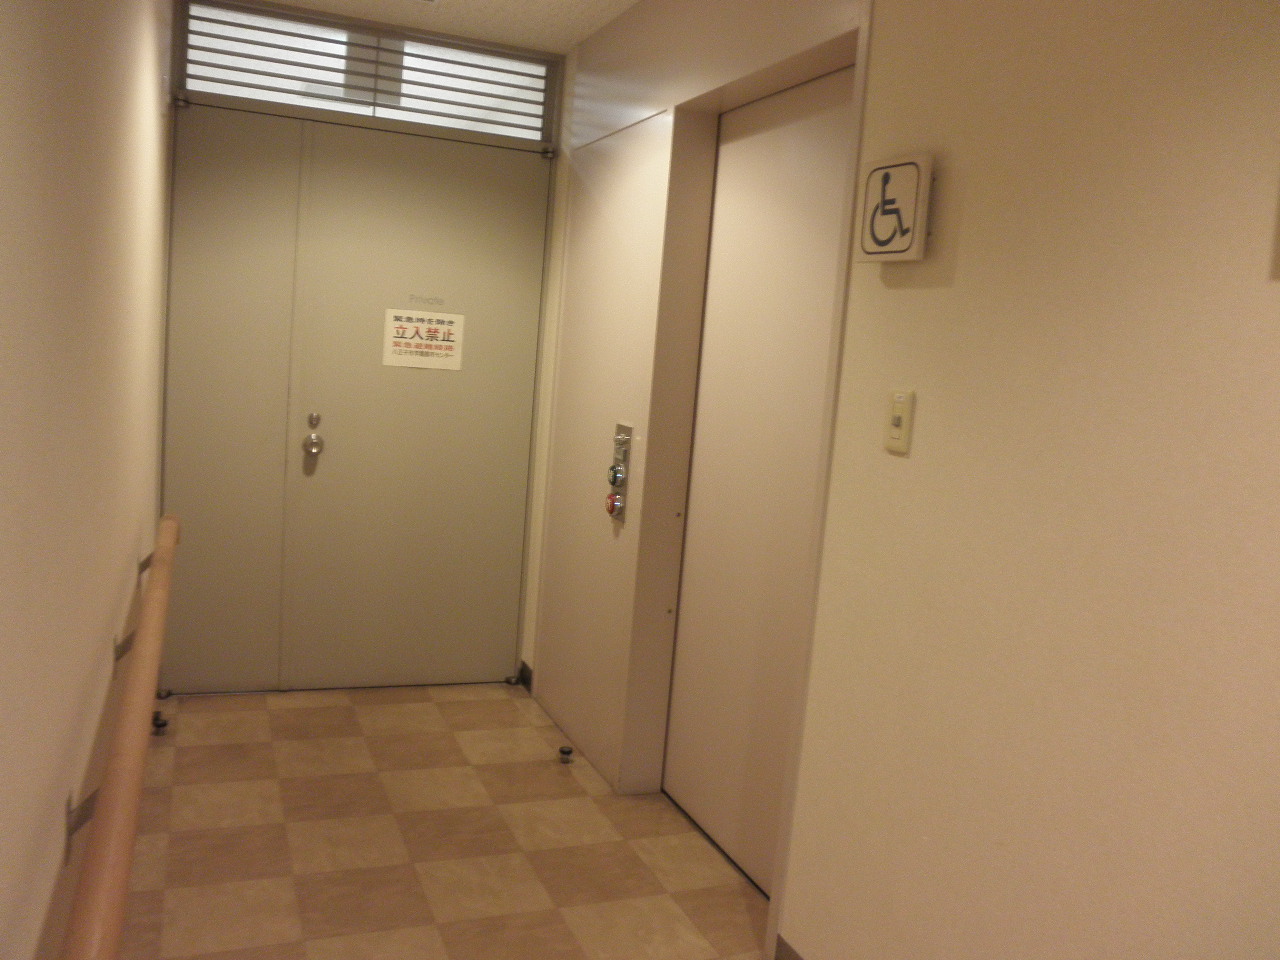 八王子市学園都市センター 車イスで行けるトイレ情報サイト Yorisou ヨリソウ 利用者の方へ安心と優しさを届ける本物の情報を